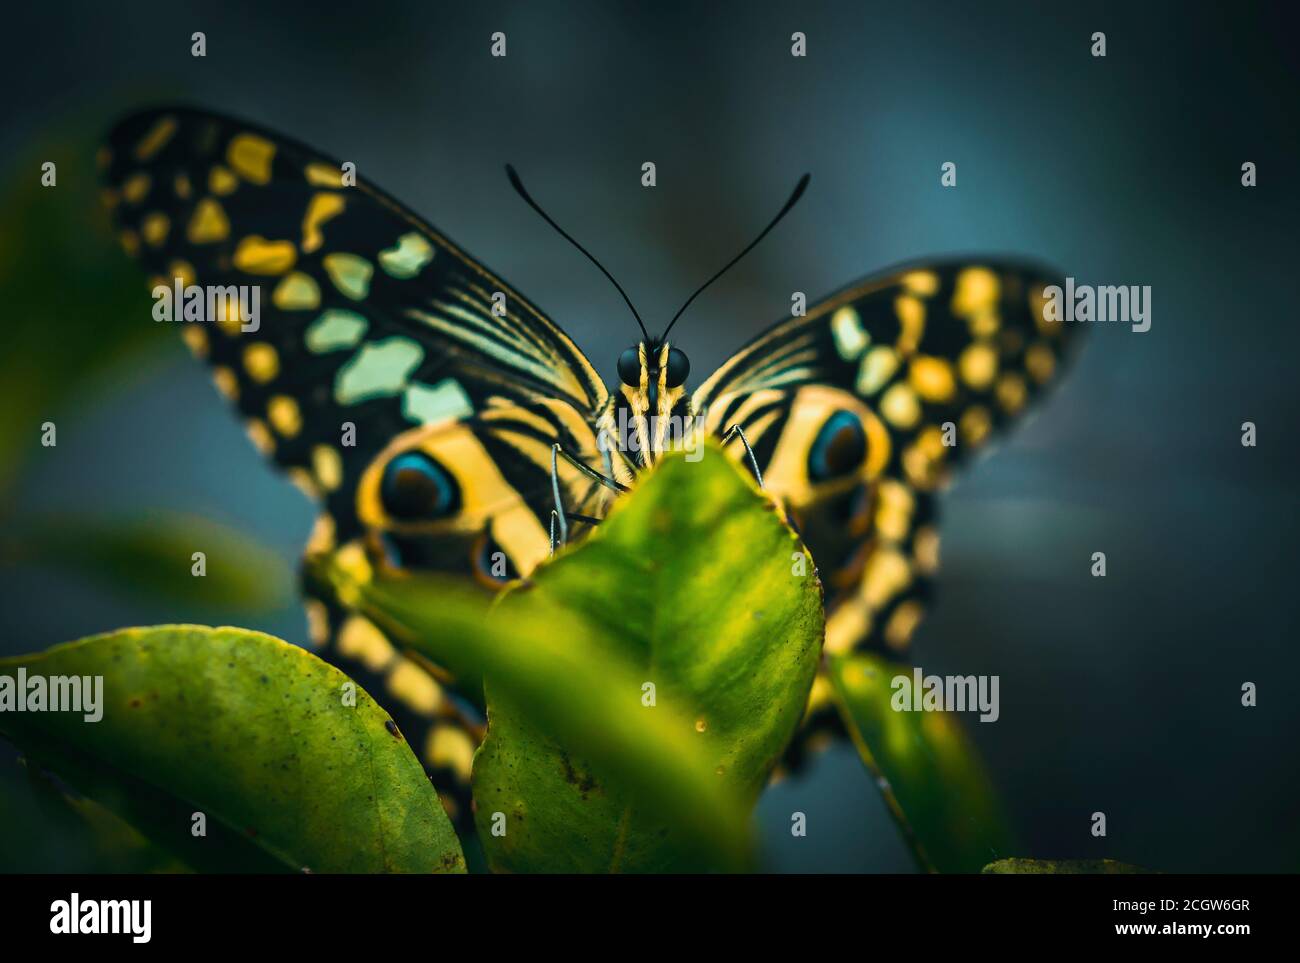 Wild lemon tree immagini e fotografie stock ad alta risoluzione - Alamy